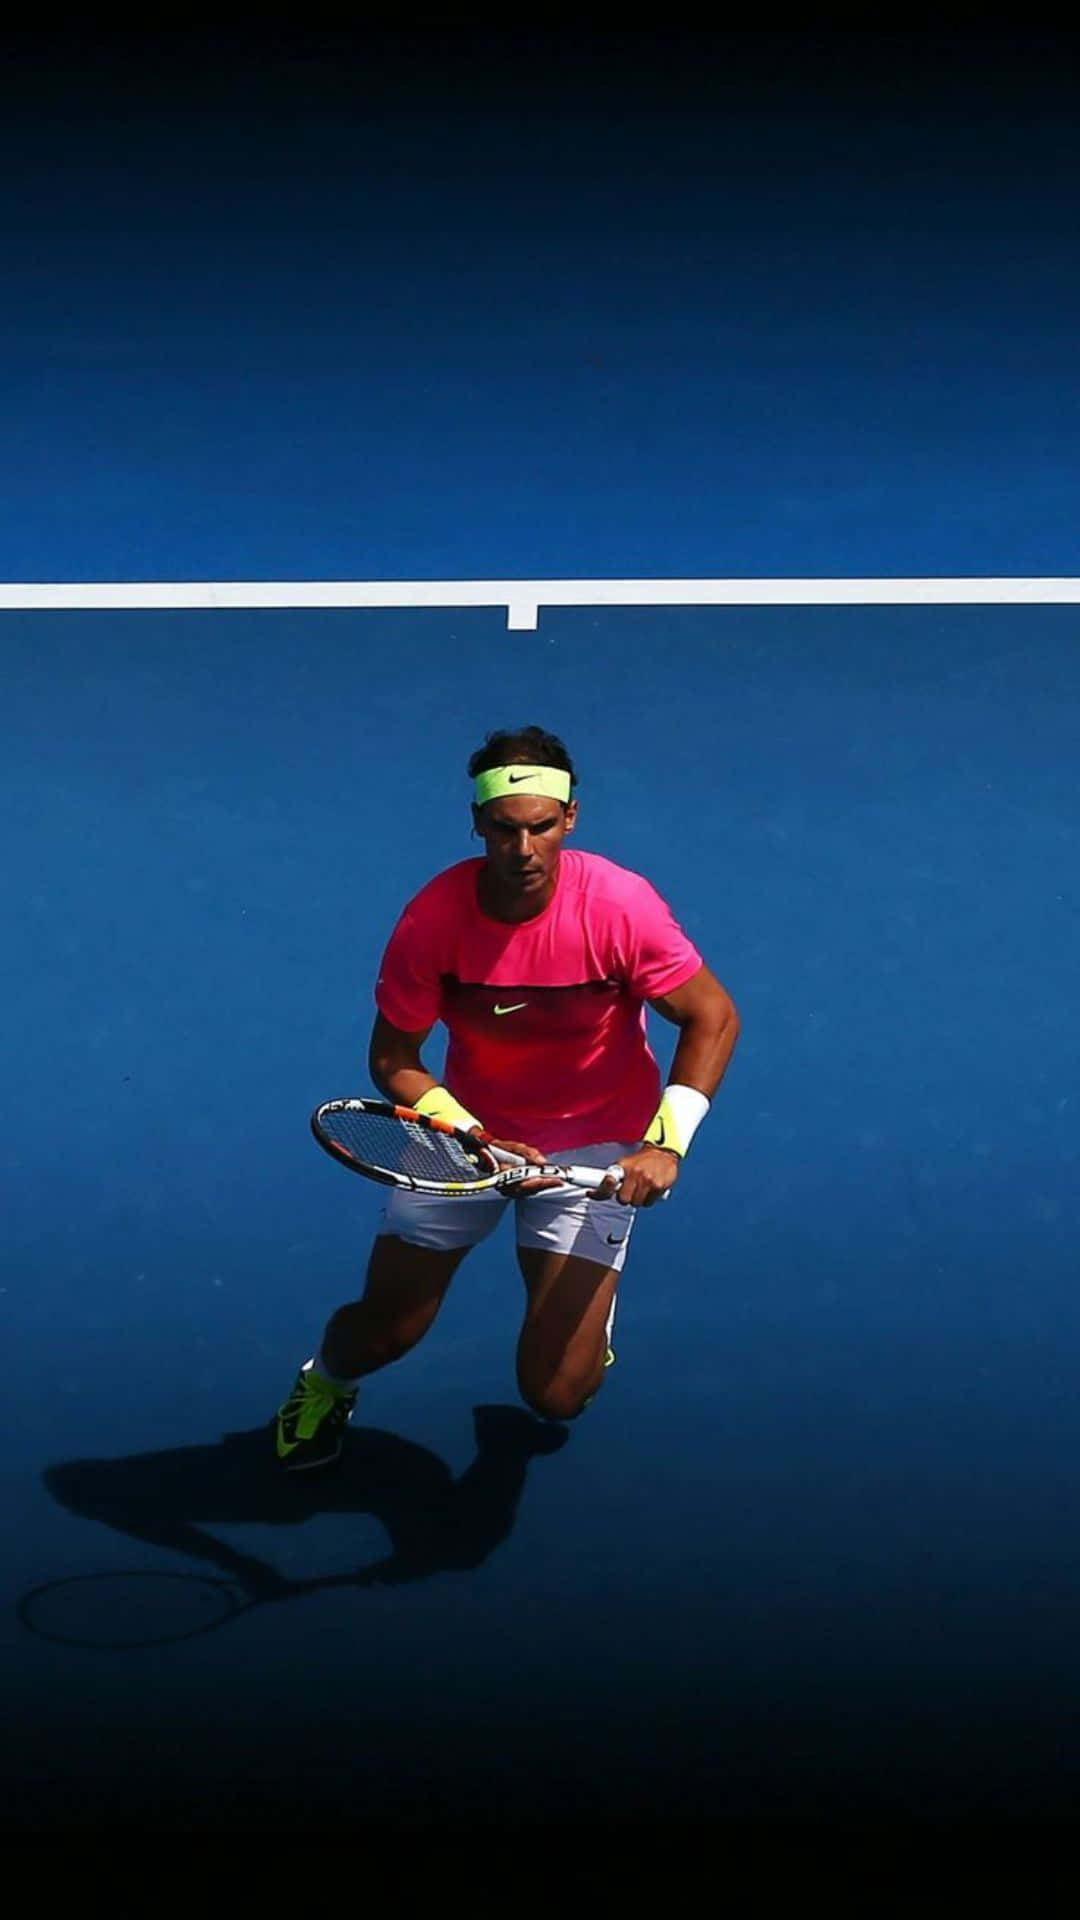 Hdtennisplayer Rafael Nadal Auf Dem Tennisplatz Hintergrund